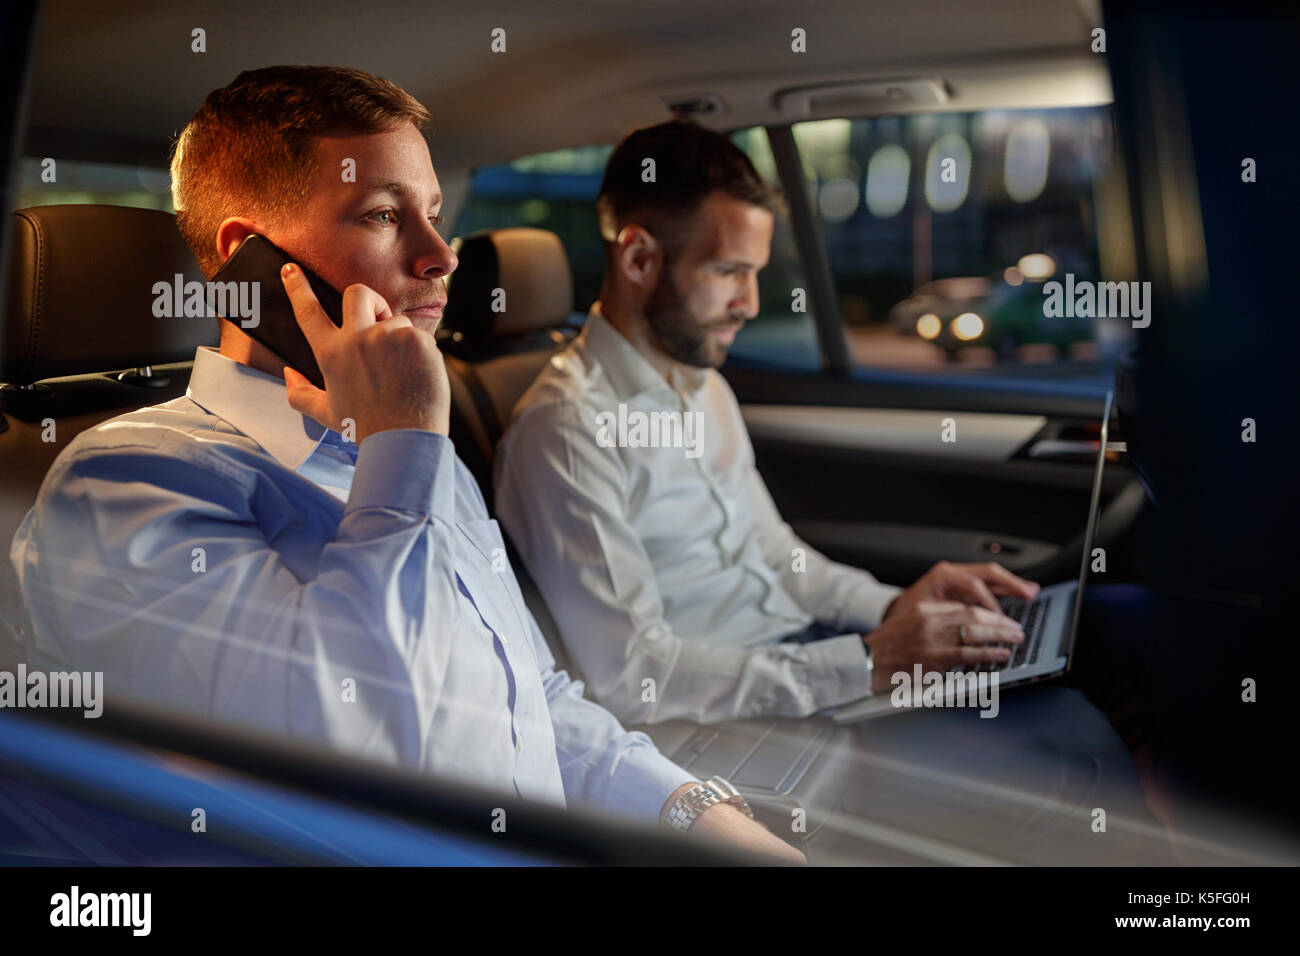 Nuit de travail- l'homme d'affaires fatigué smartphone utiliser dans la voiture Banque D'Images